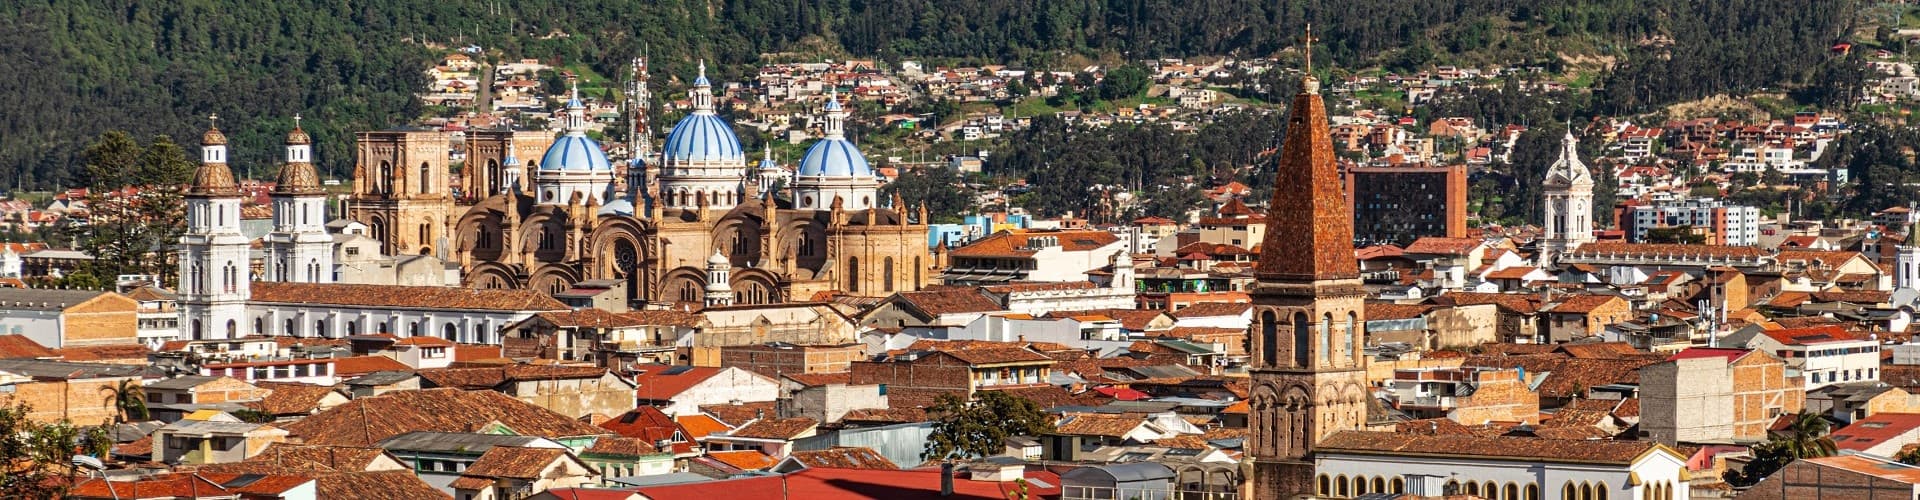 Cuenca Ecuador Skyline